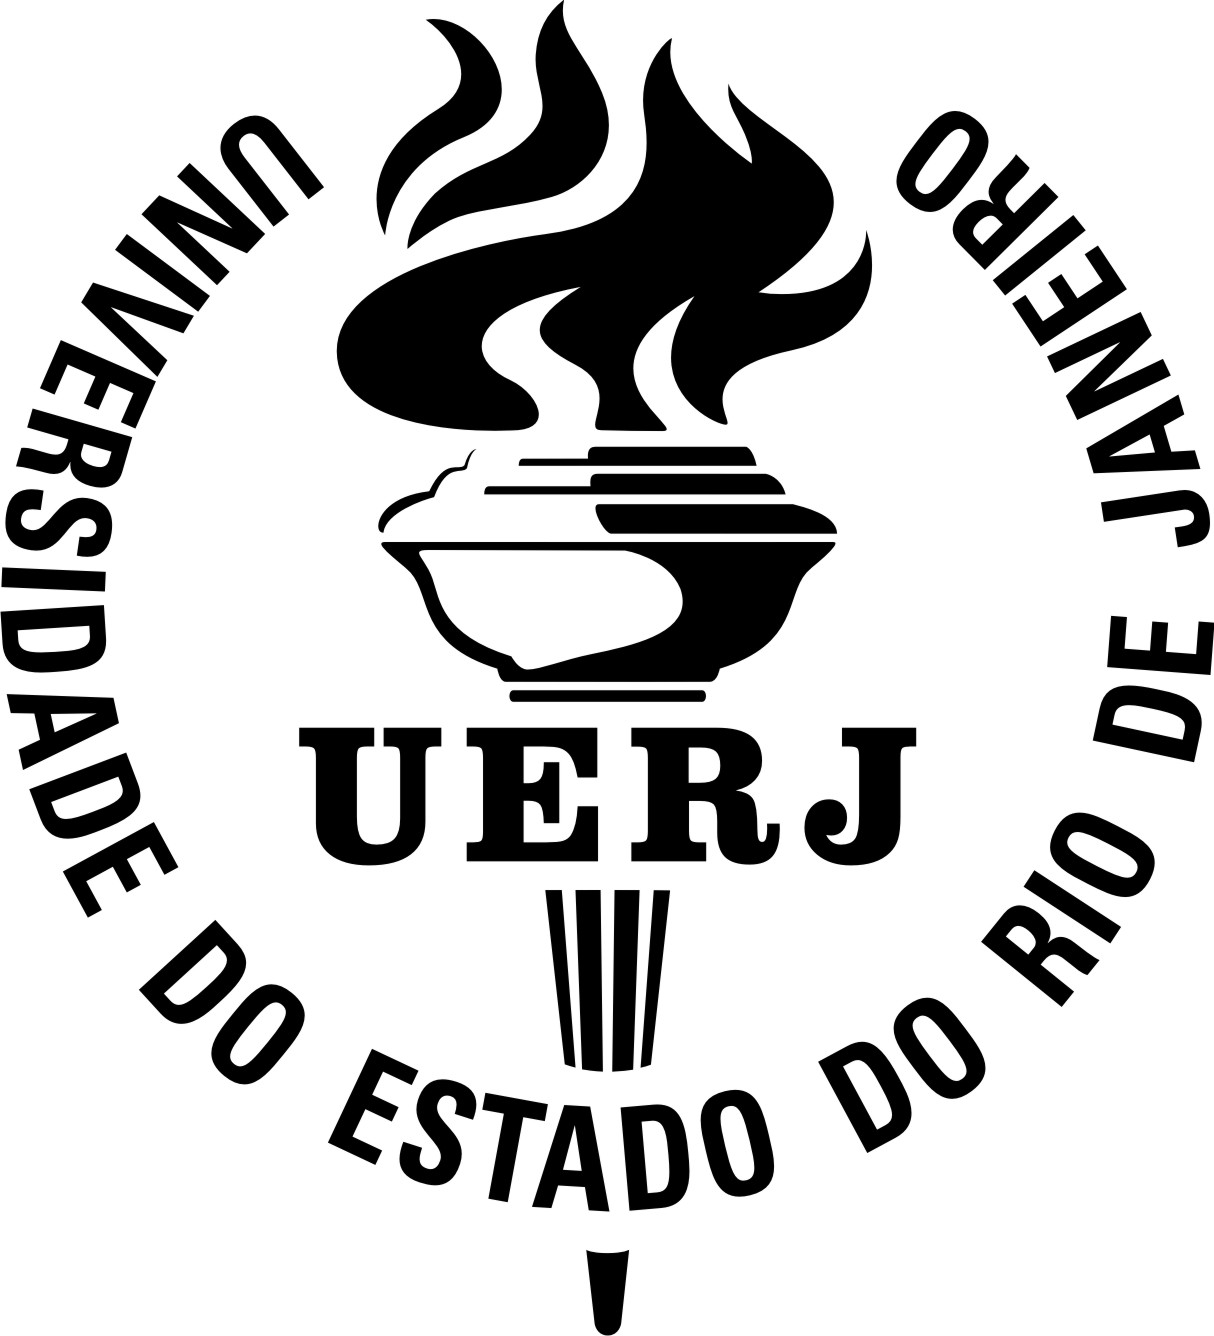 Universidade do Estado do Rio de Janeiero